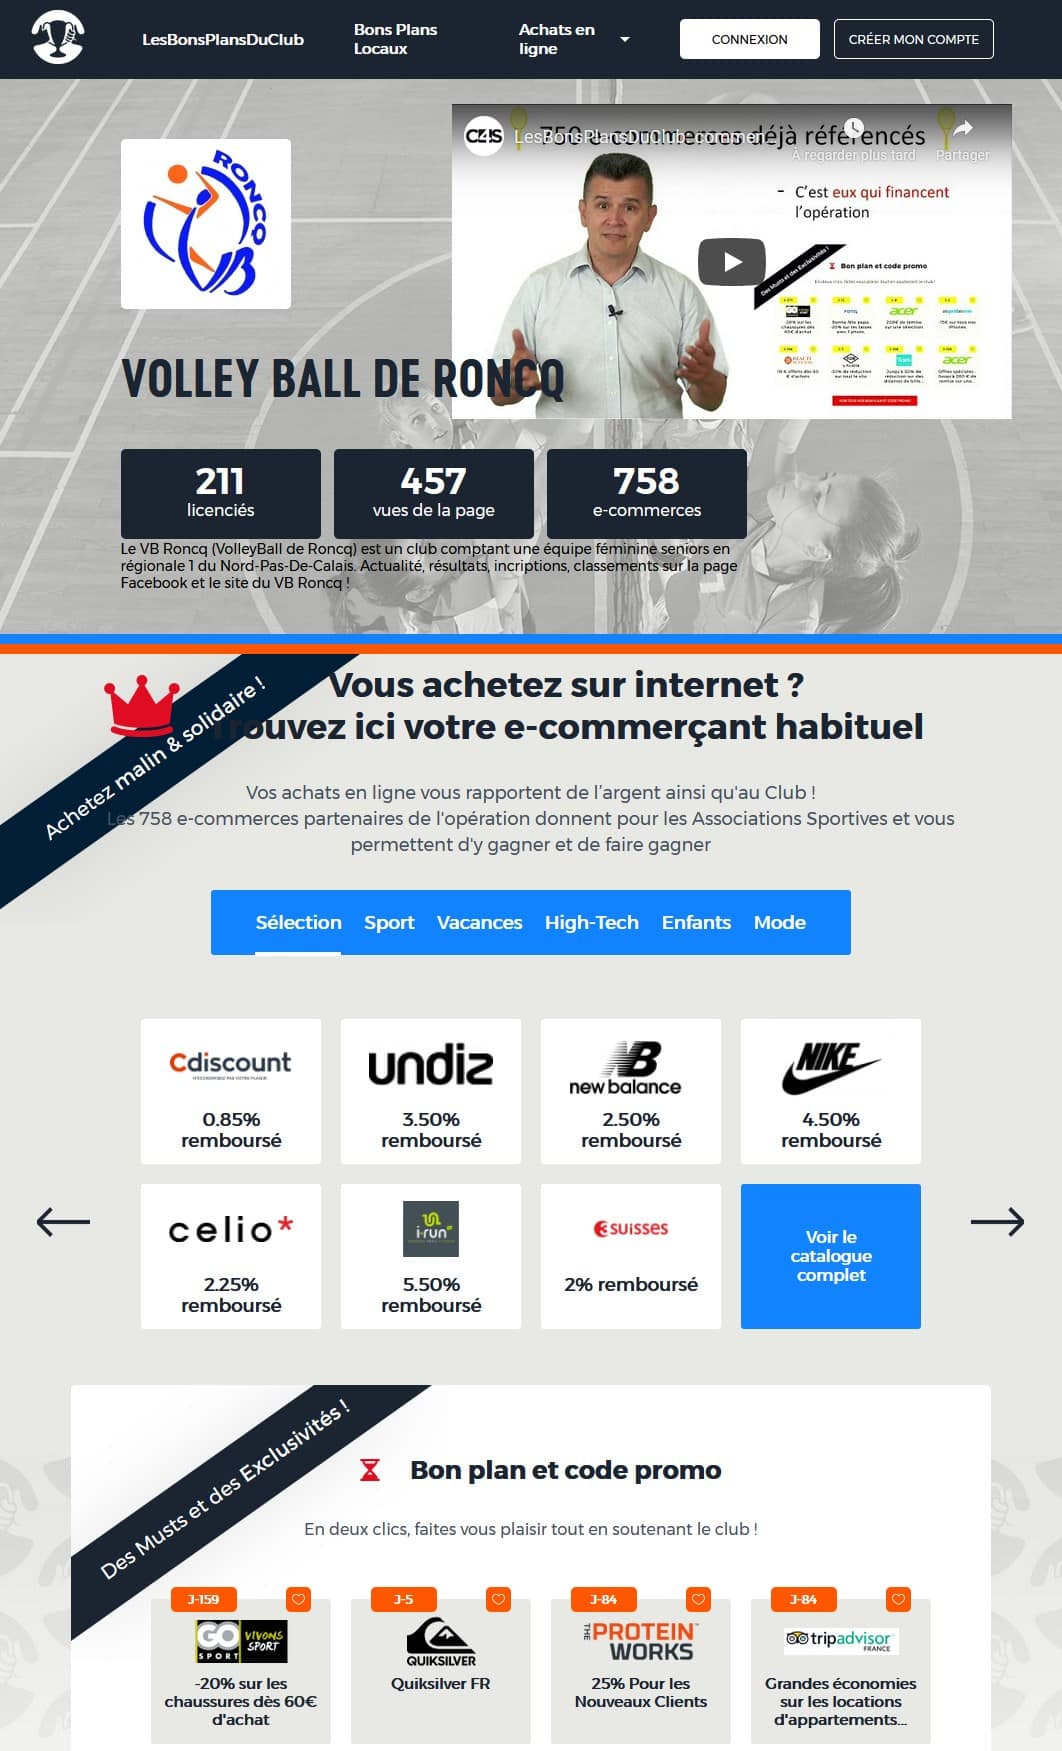 Bienvenue au Volley Ball de Roncq pour cette saison 2019-2020 7